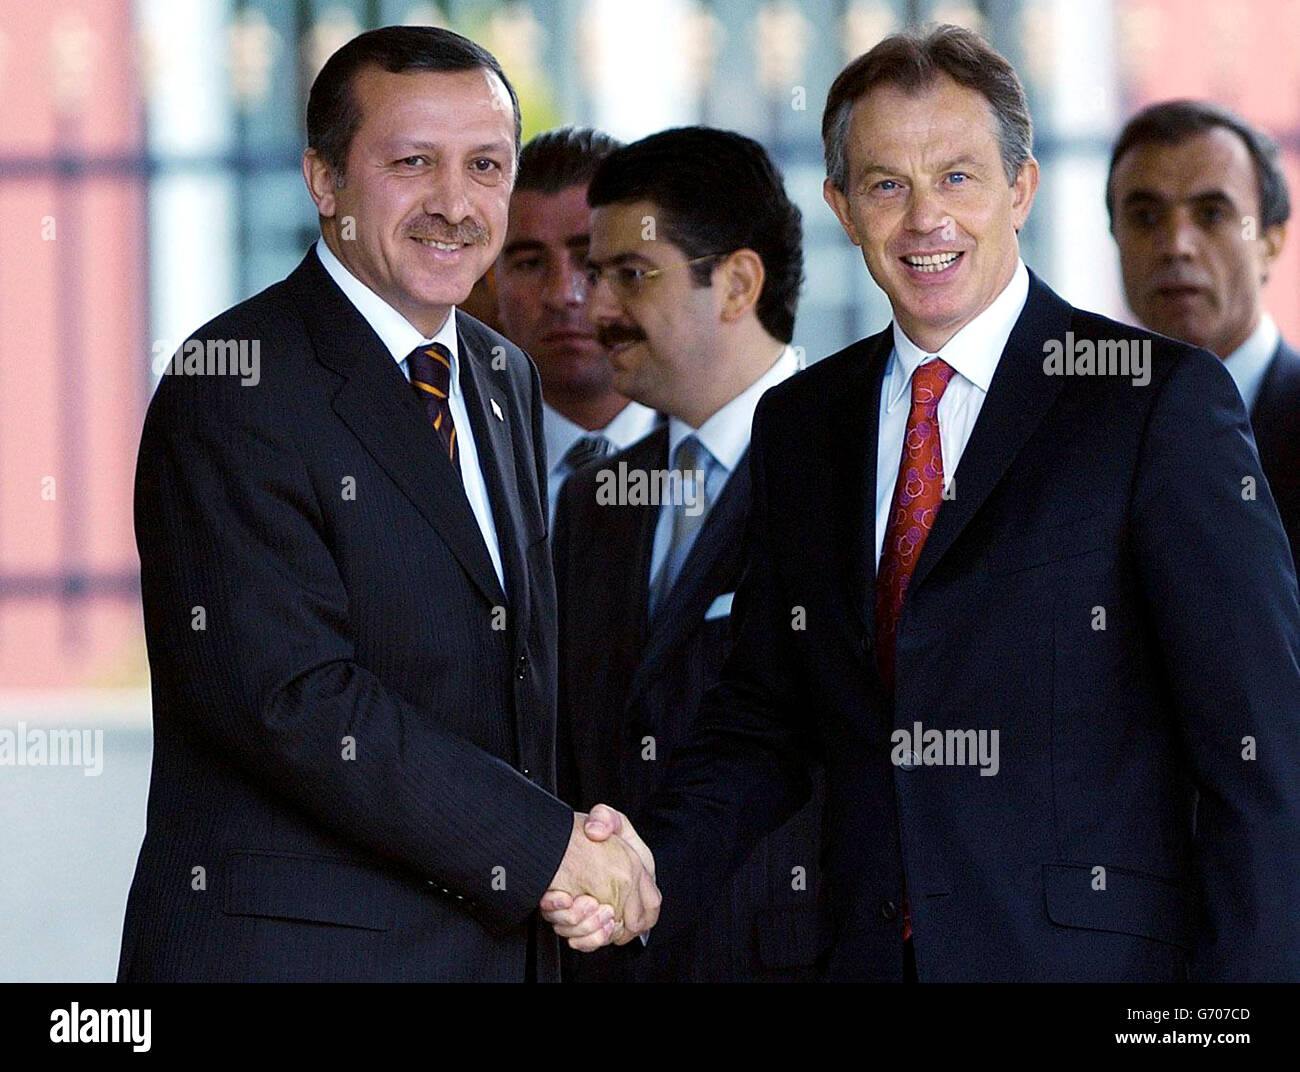 Le Premier ministre turc Tony Blair (à droite) est accueilli par le Premier ministre turc Recep Erdogan après son arrivée à Ankora, pour un sommet qui a déjà été éclipsé par l'Irak, le terrorisme et les doutes sur son leadership.Le départ de M. Blair de Londres ce matin a été retardé, car les détails de l'assassinat du dirigeant du conseil de gouvernement irakien à un poste de contrôle à Bagdad lui ont été communiqués. Banque D'Images